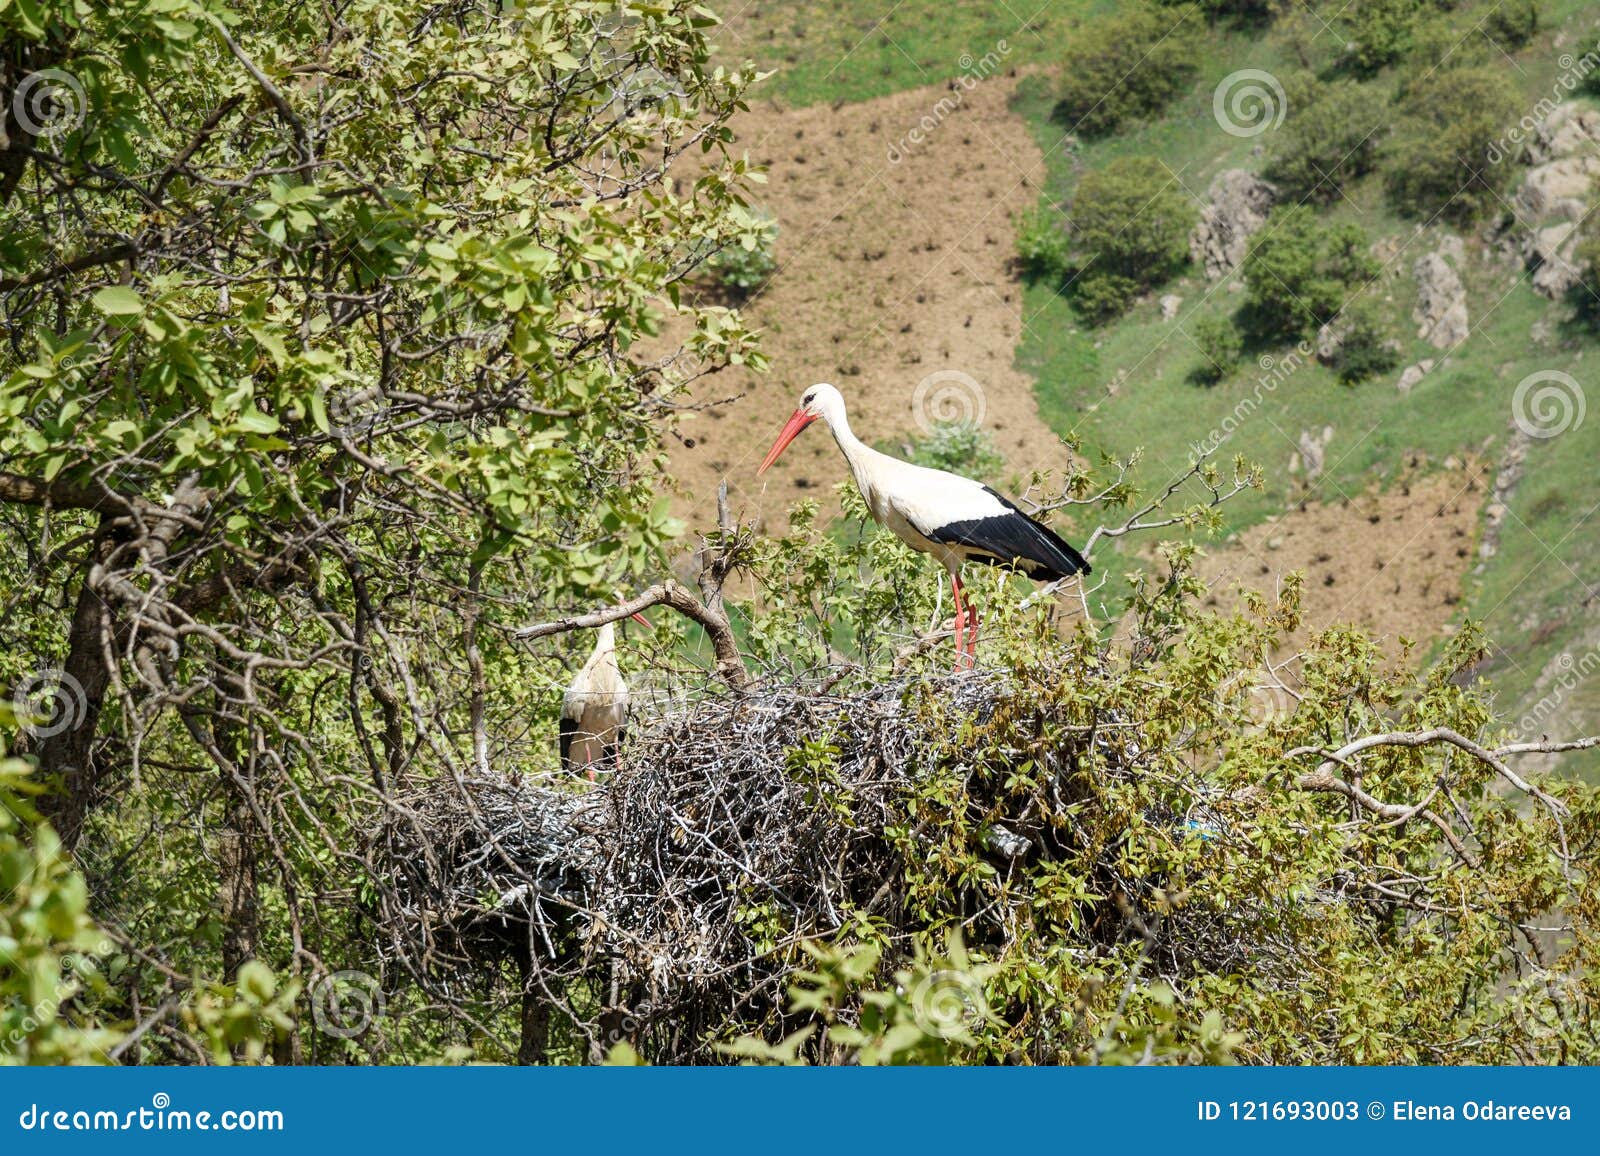 nest of storks in darreh tafi village near zarivar lake, marivan, iran